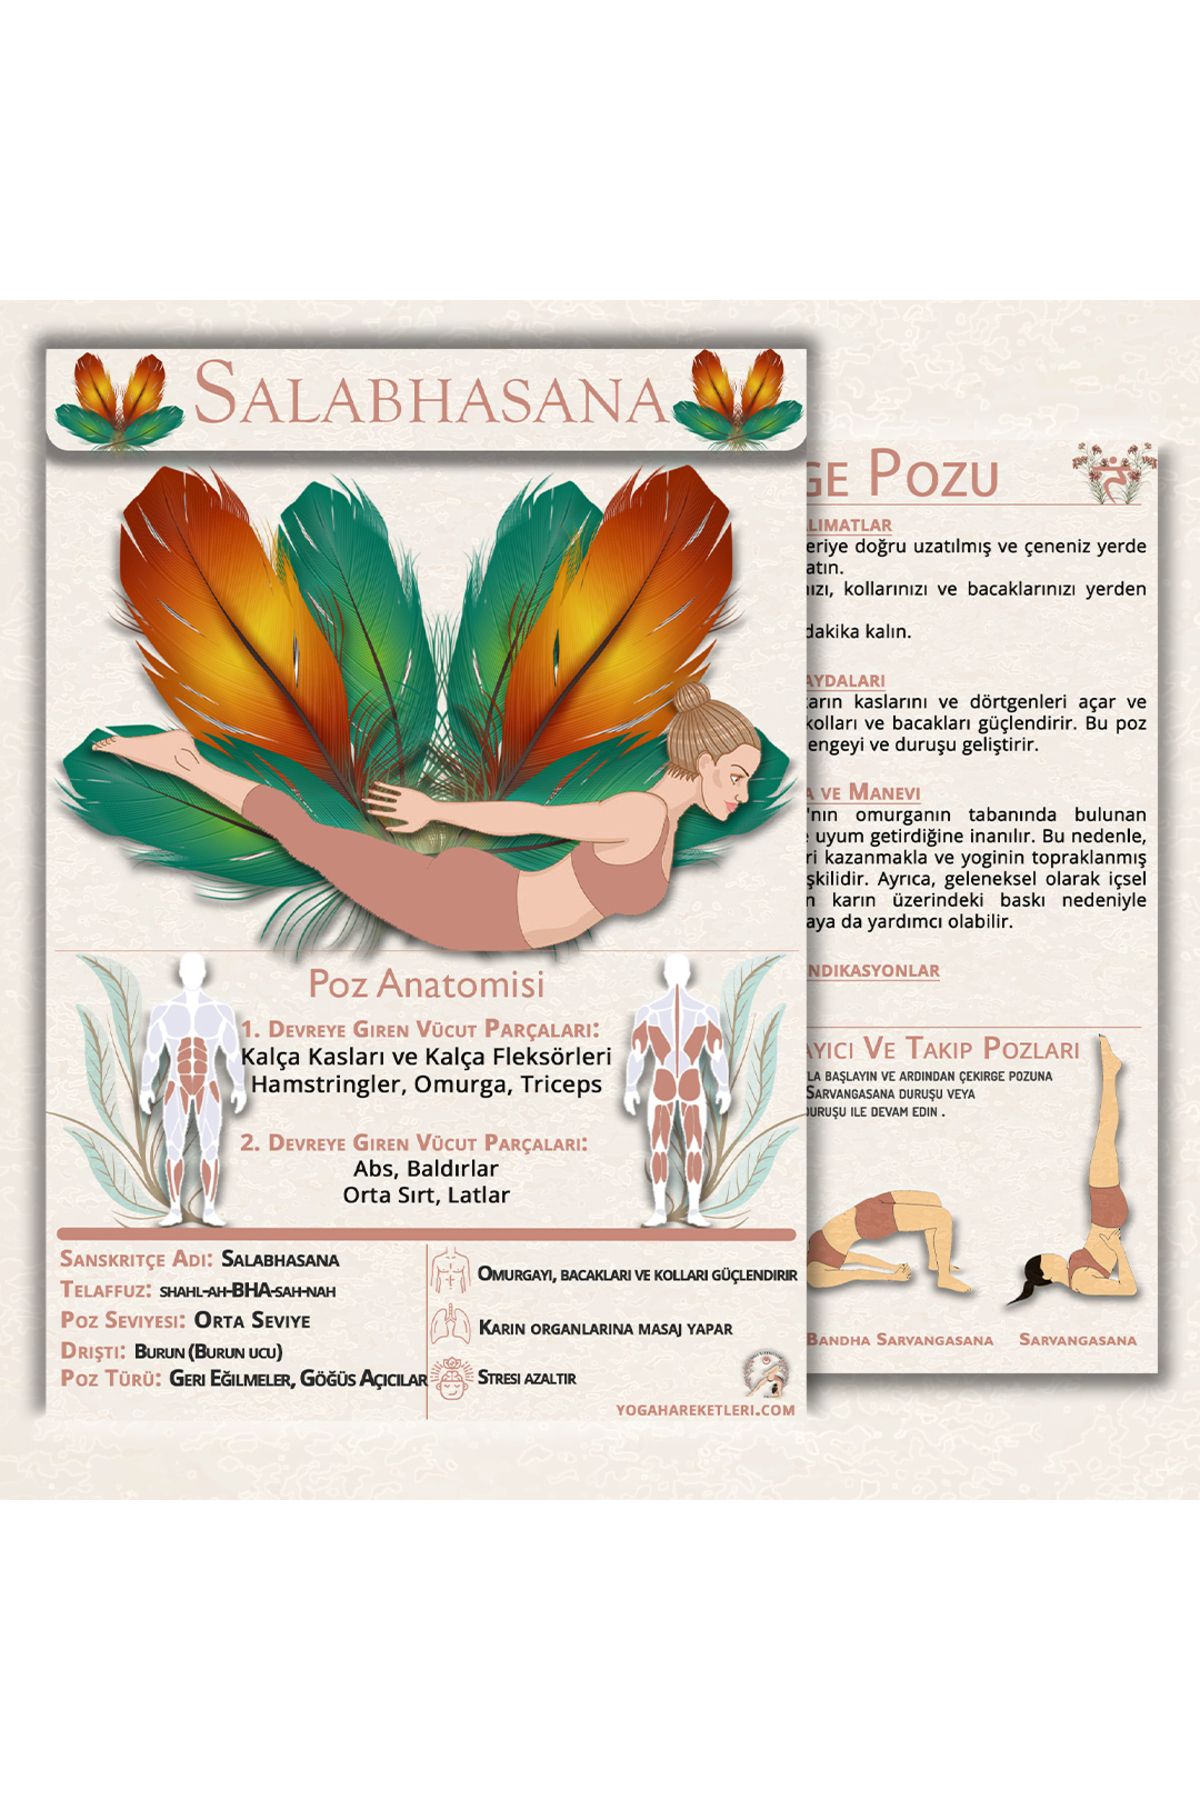 Yoga Hareketleri 60 Yoga Anatomisi Içeren Temel Kartları